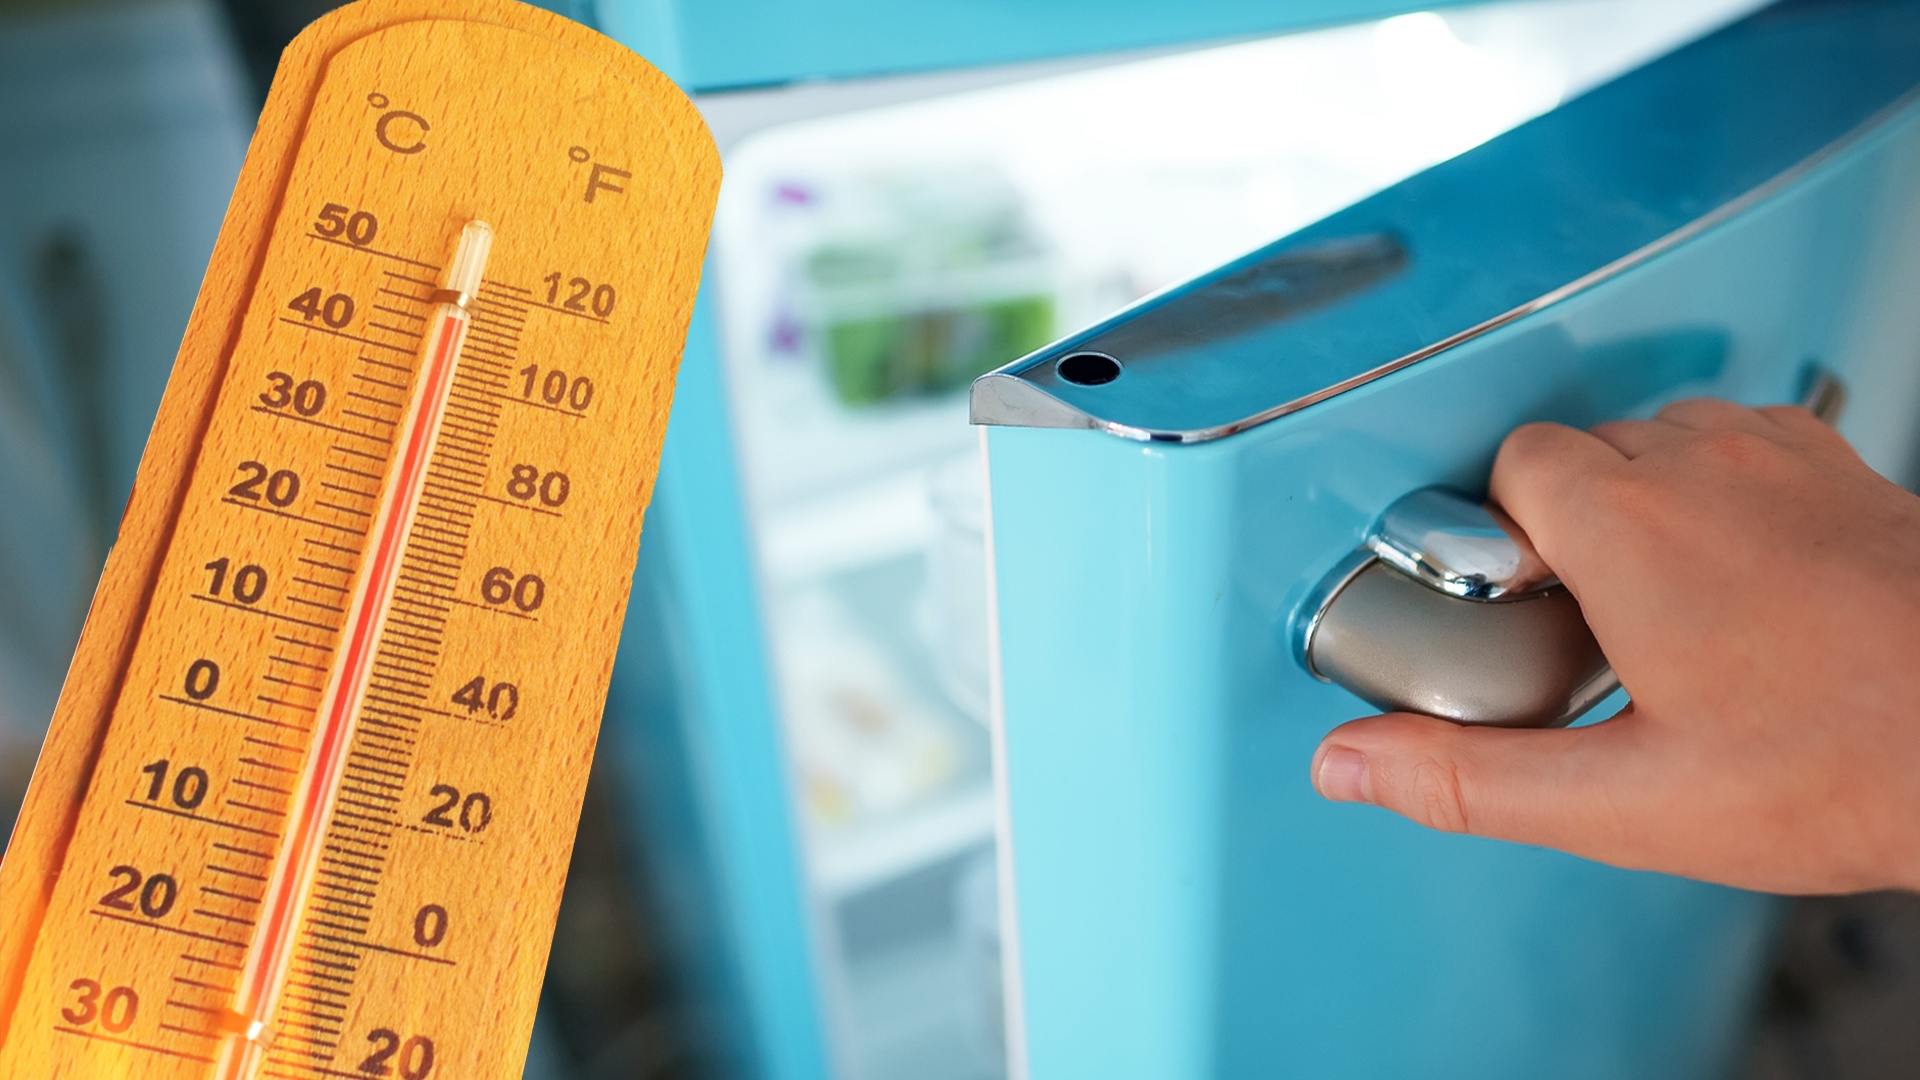 #Kühlschränke gegen die Klimakrise? Diese neue Kühltechnik ist verblüffend umweltfreundlich